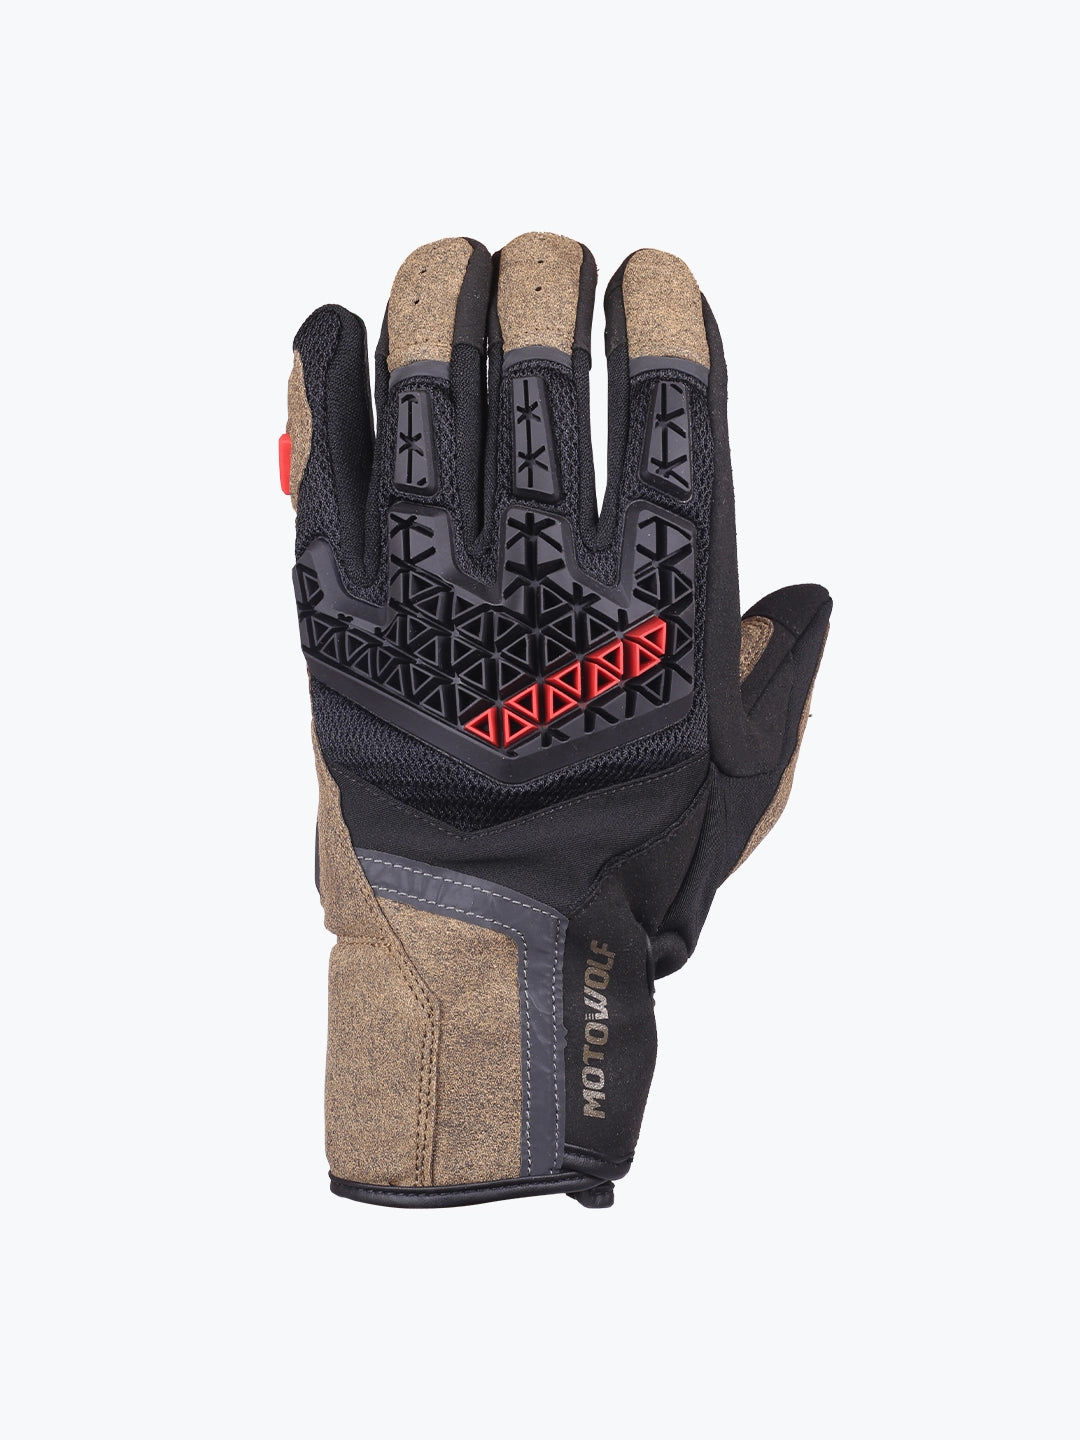 Motowolf Gloves Brown 0338